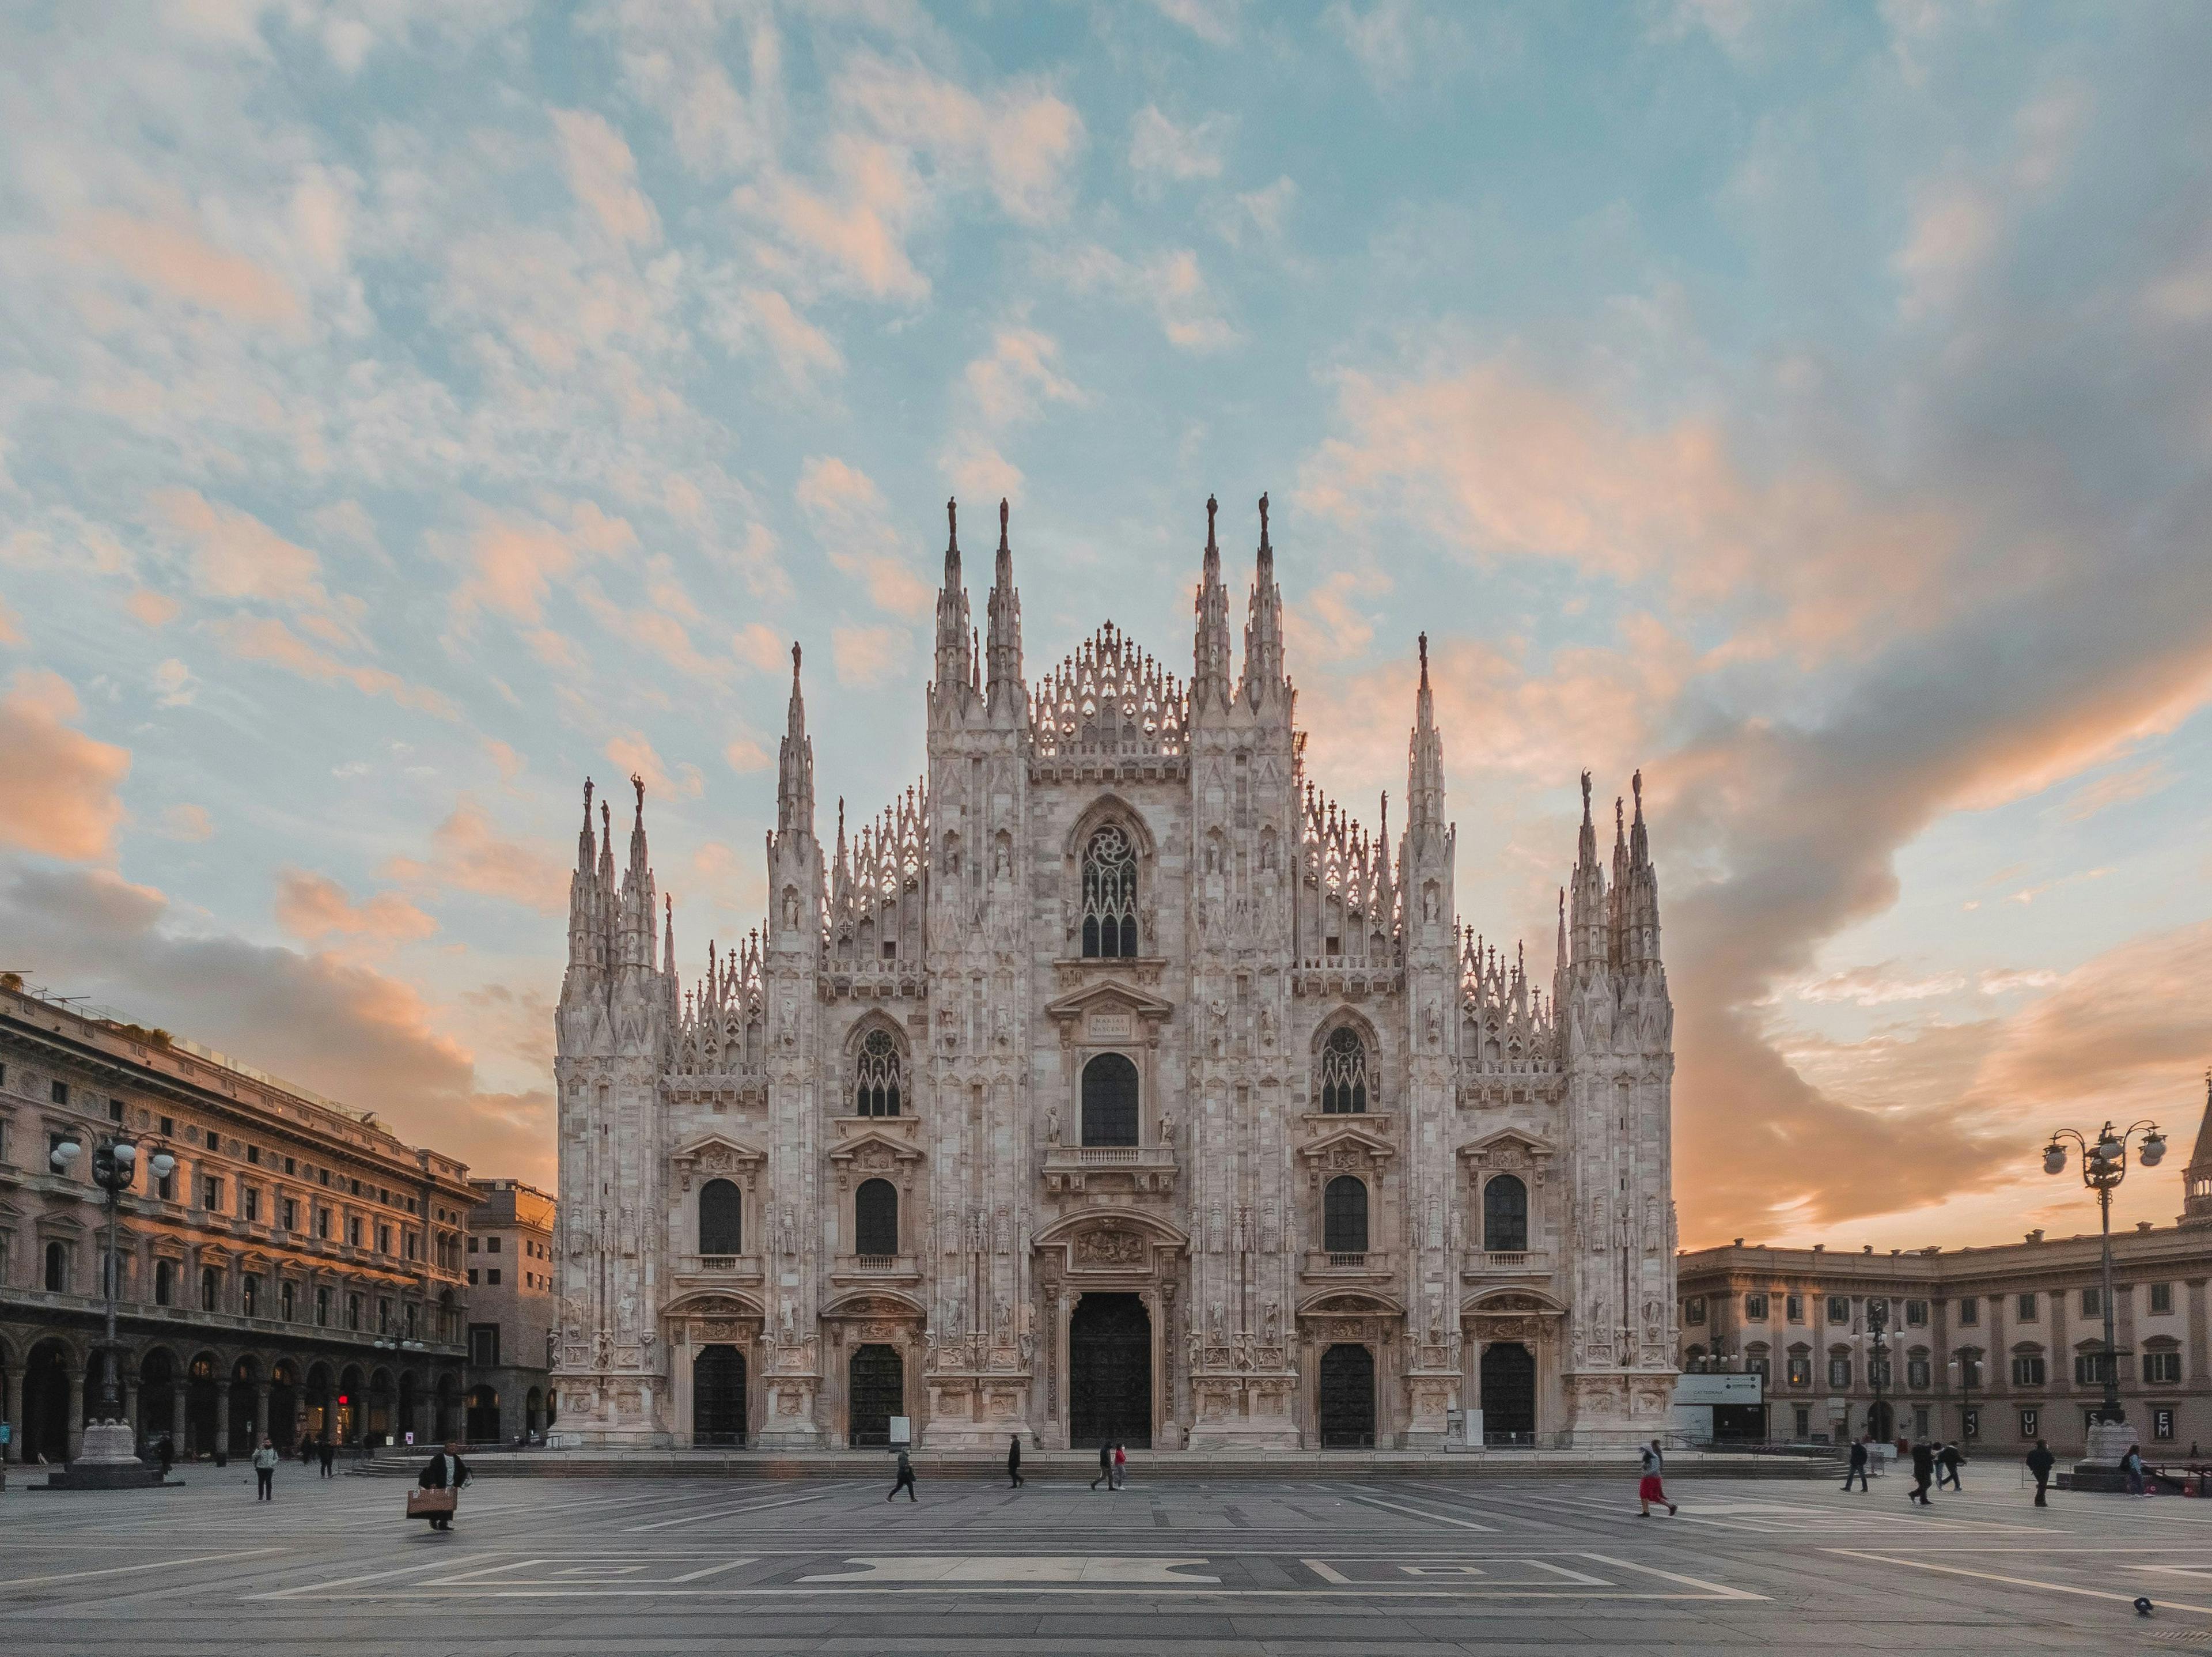 Duomo di Milano in Milan Italy